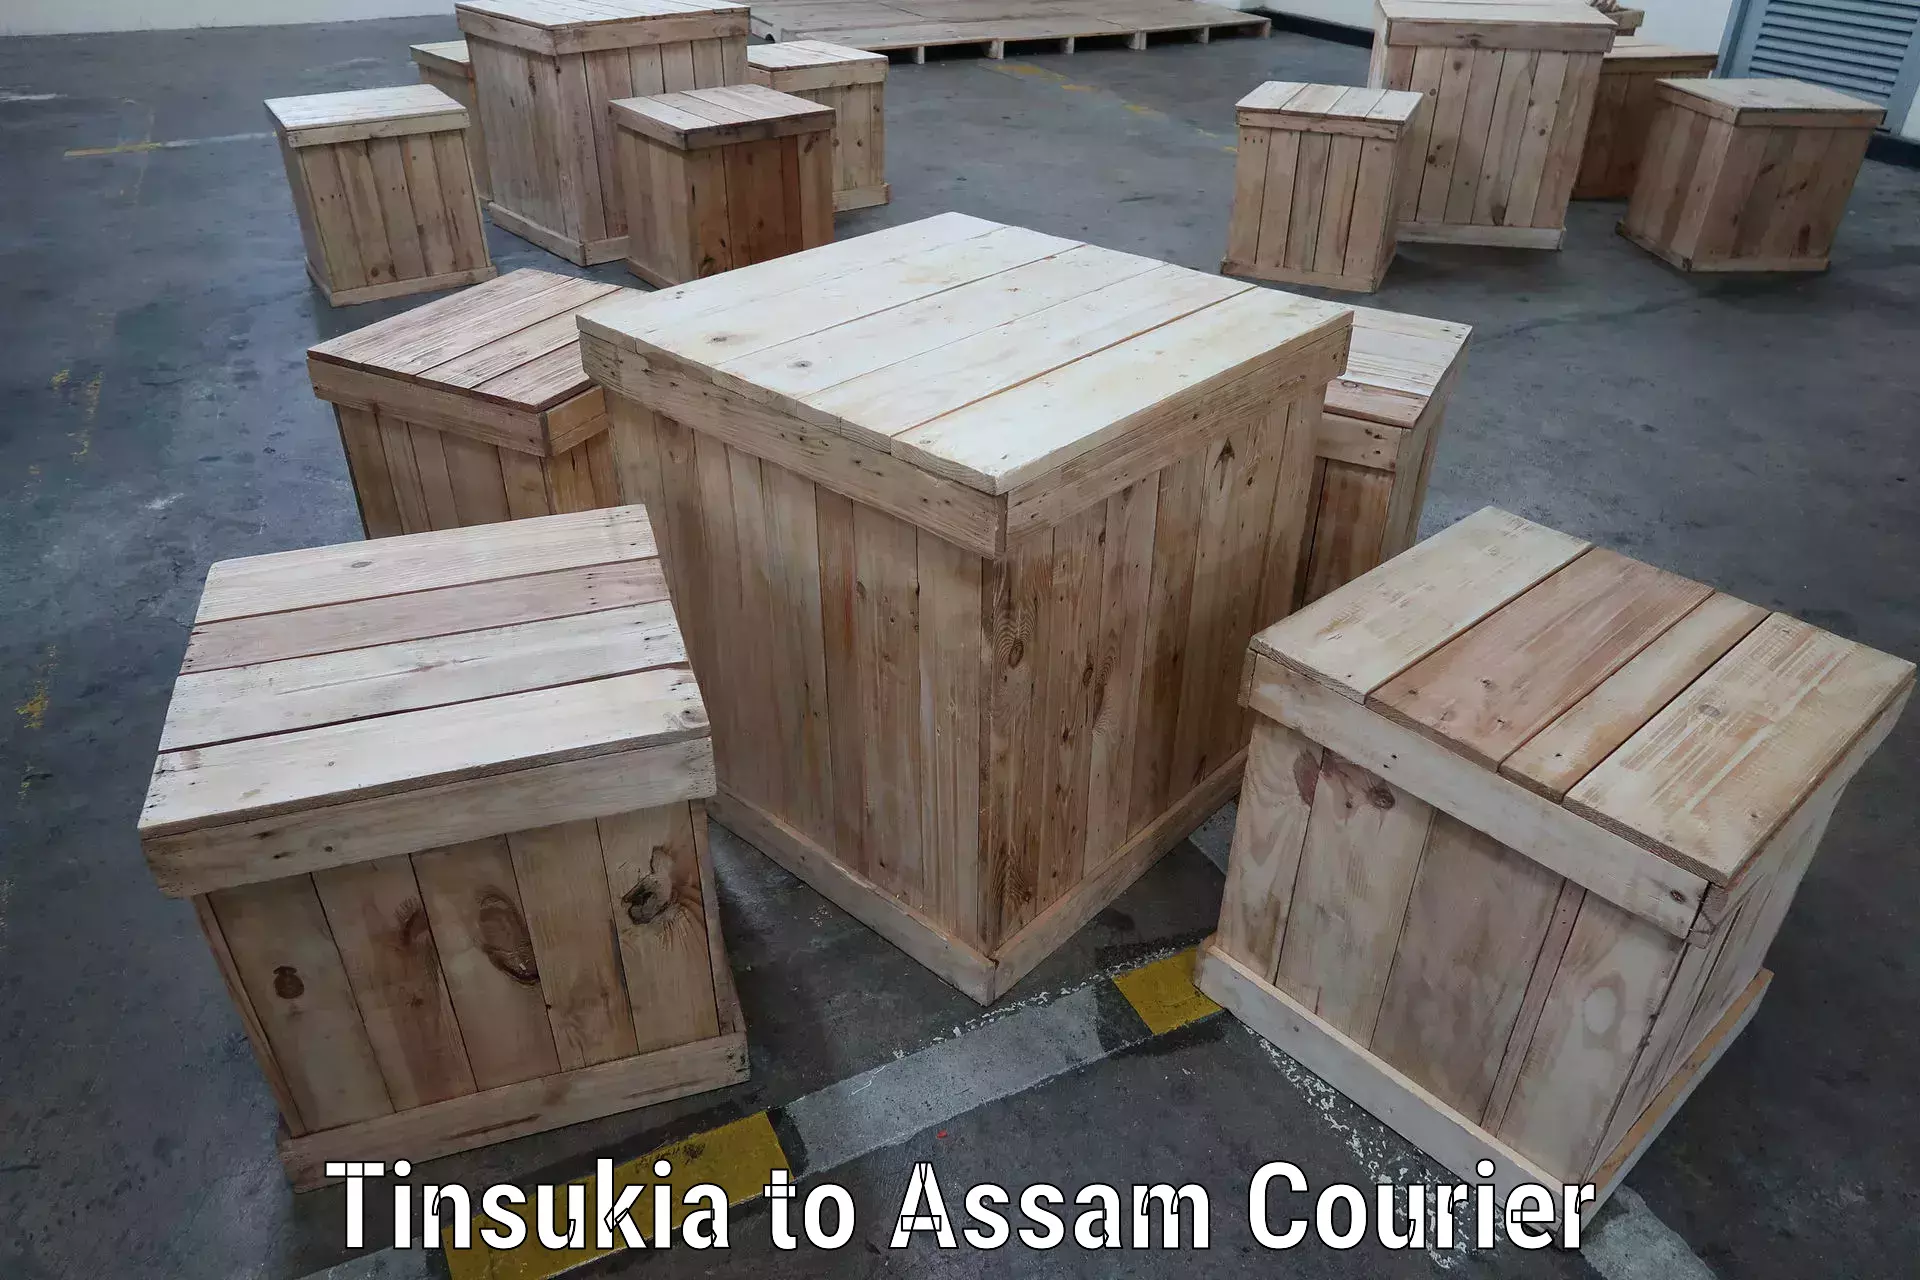 Multi-national courier services Tinsukia to Bokajan